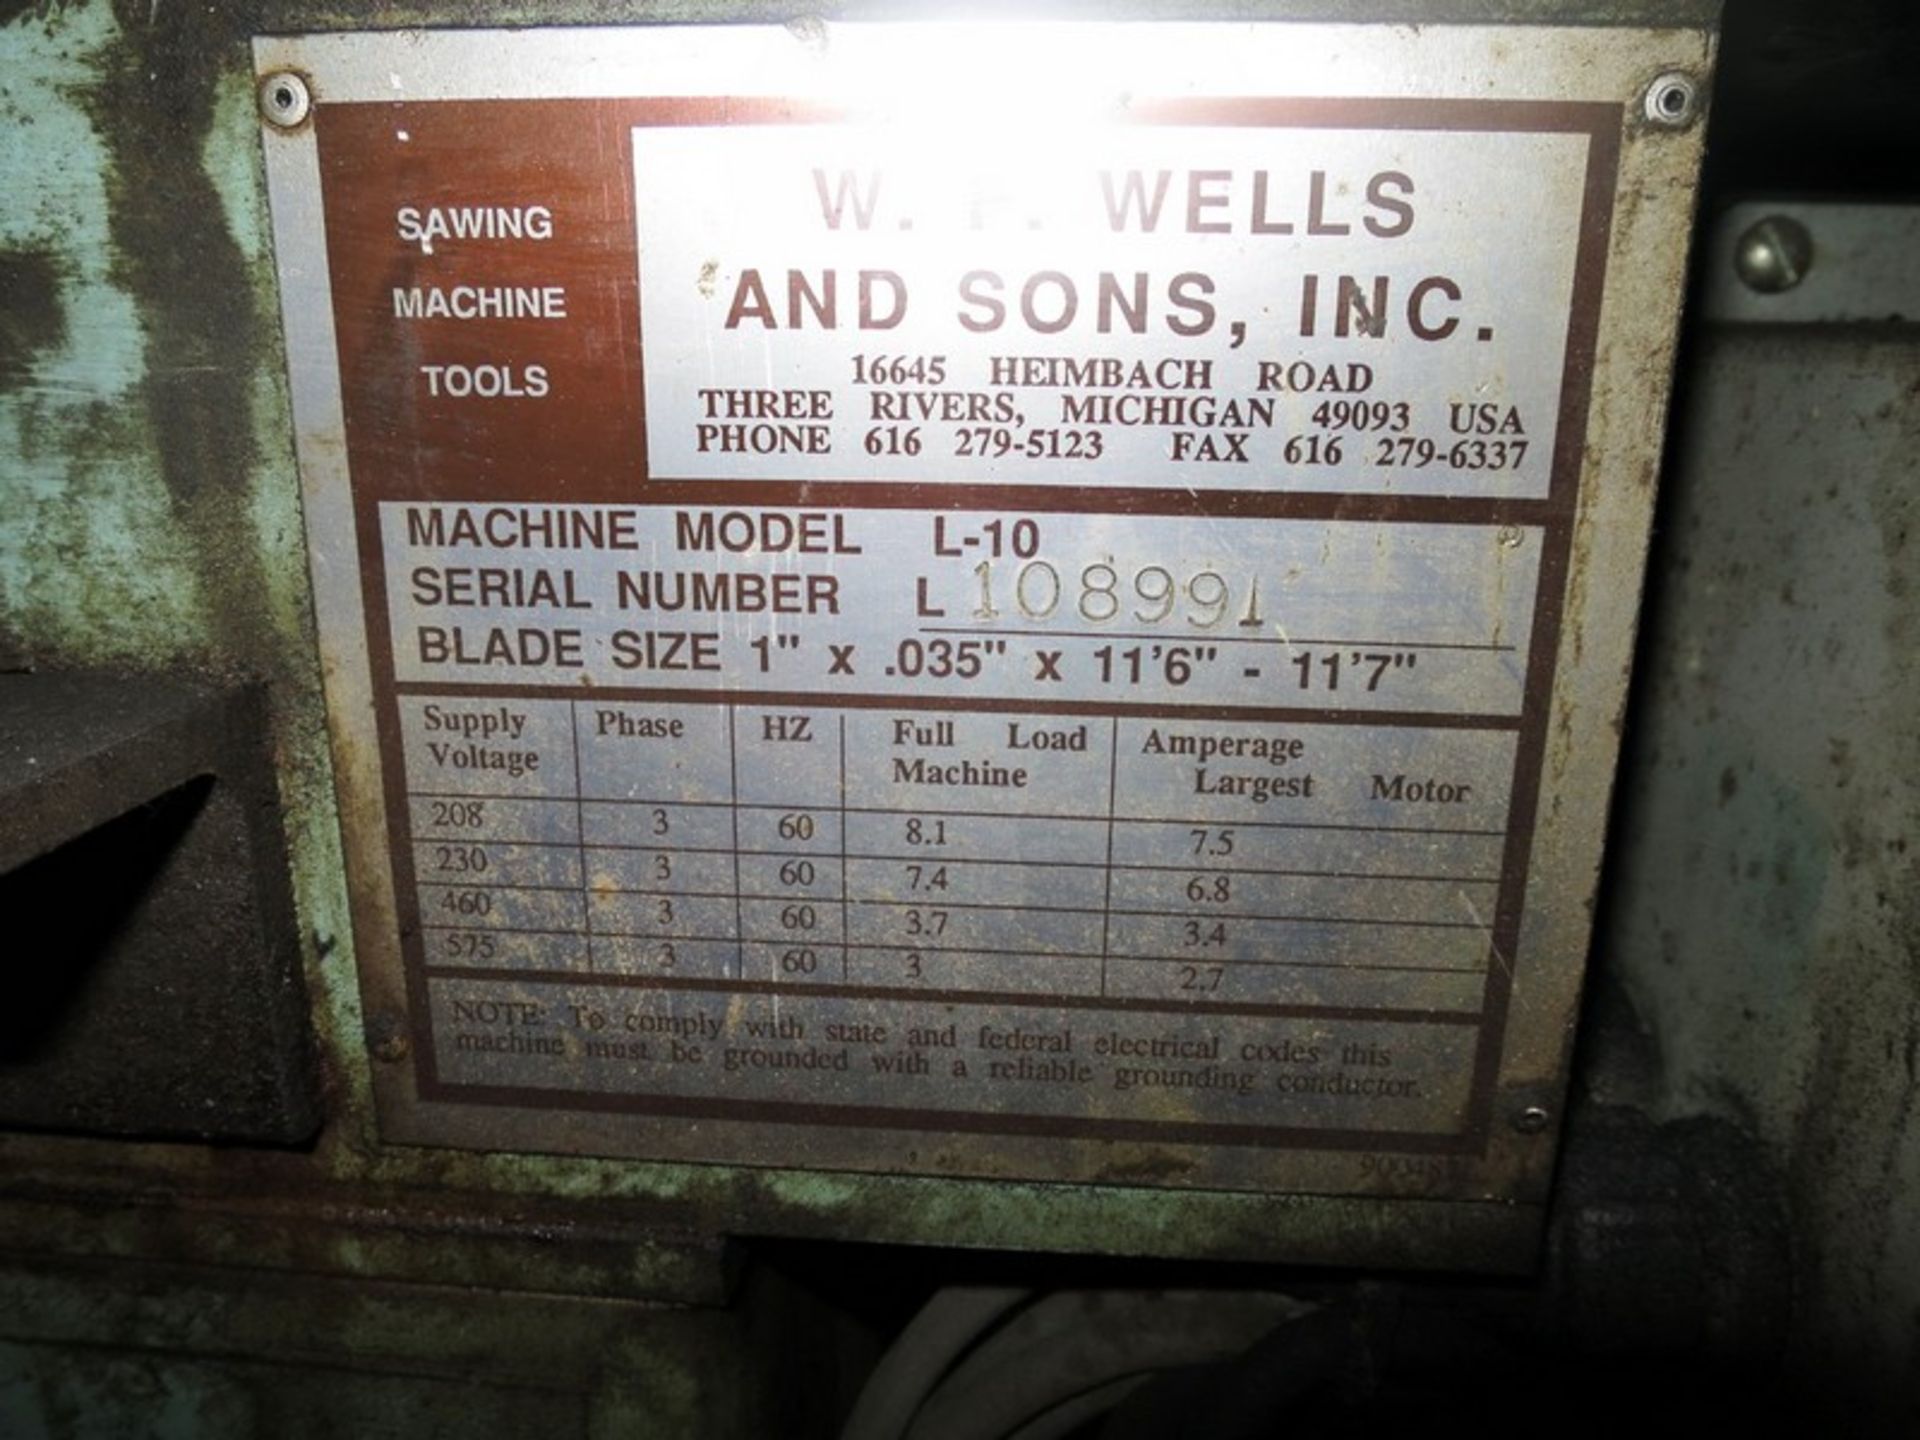 WF Wells Band Saw Model: L-10, S/N: 108991, 1" x 0.035" x 11'6" - 11'7" - Image 2 of 2